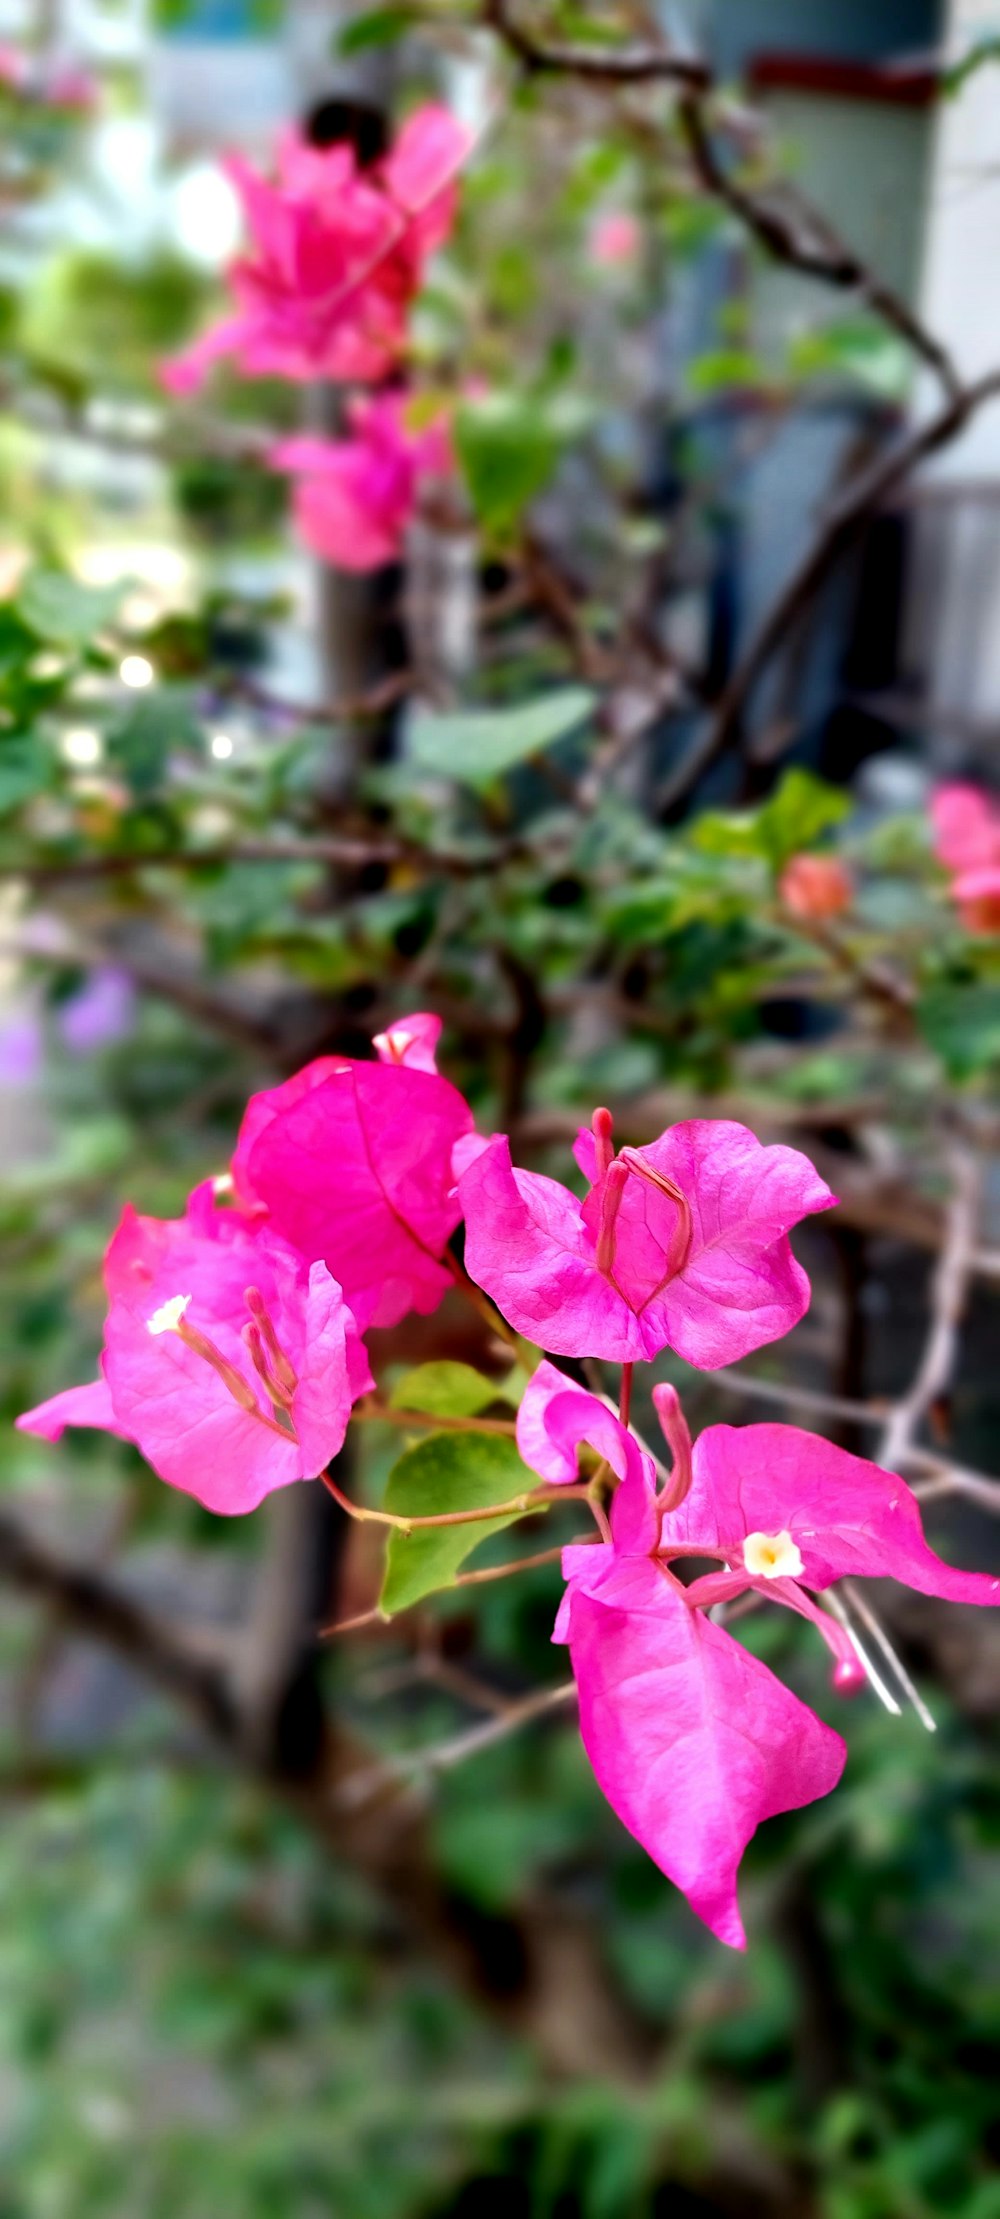 I fiori rosa sbocciano in un giardino